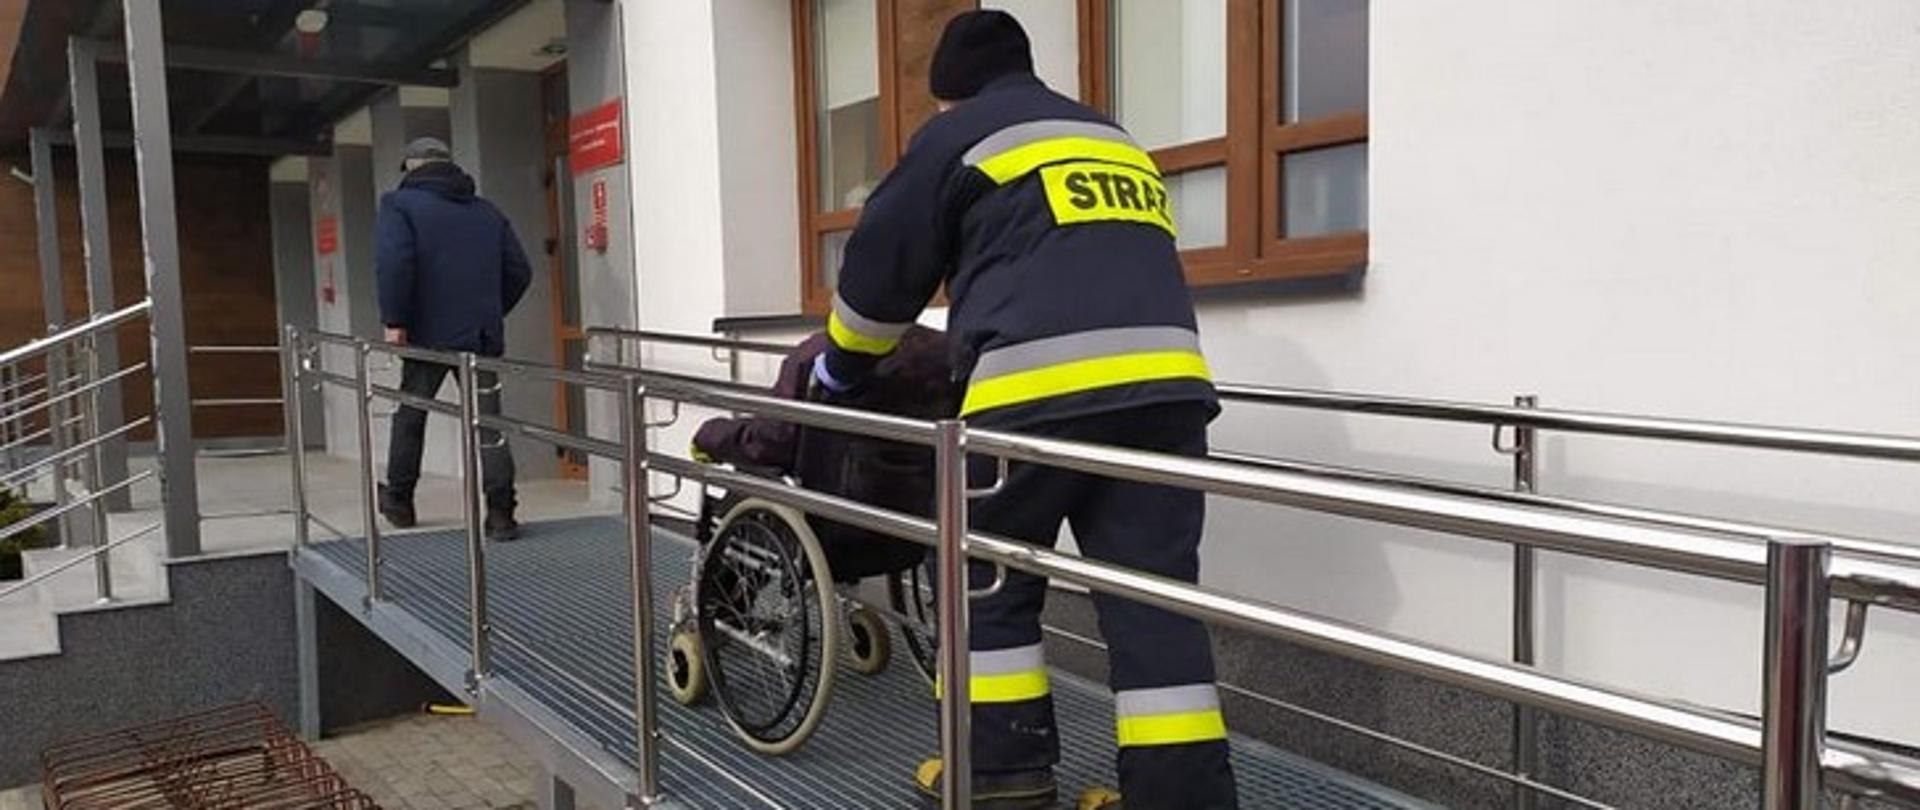 Zdjęcie przedstawia strażaka prowadzącego starszą osobę na wózku inwalidzkim.